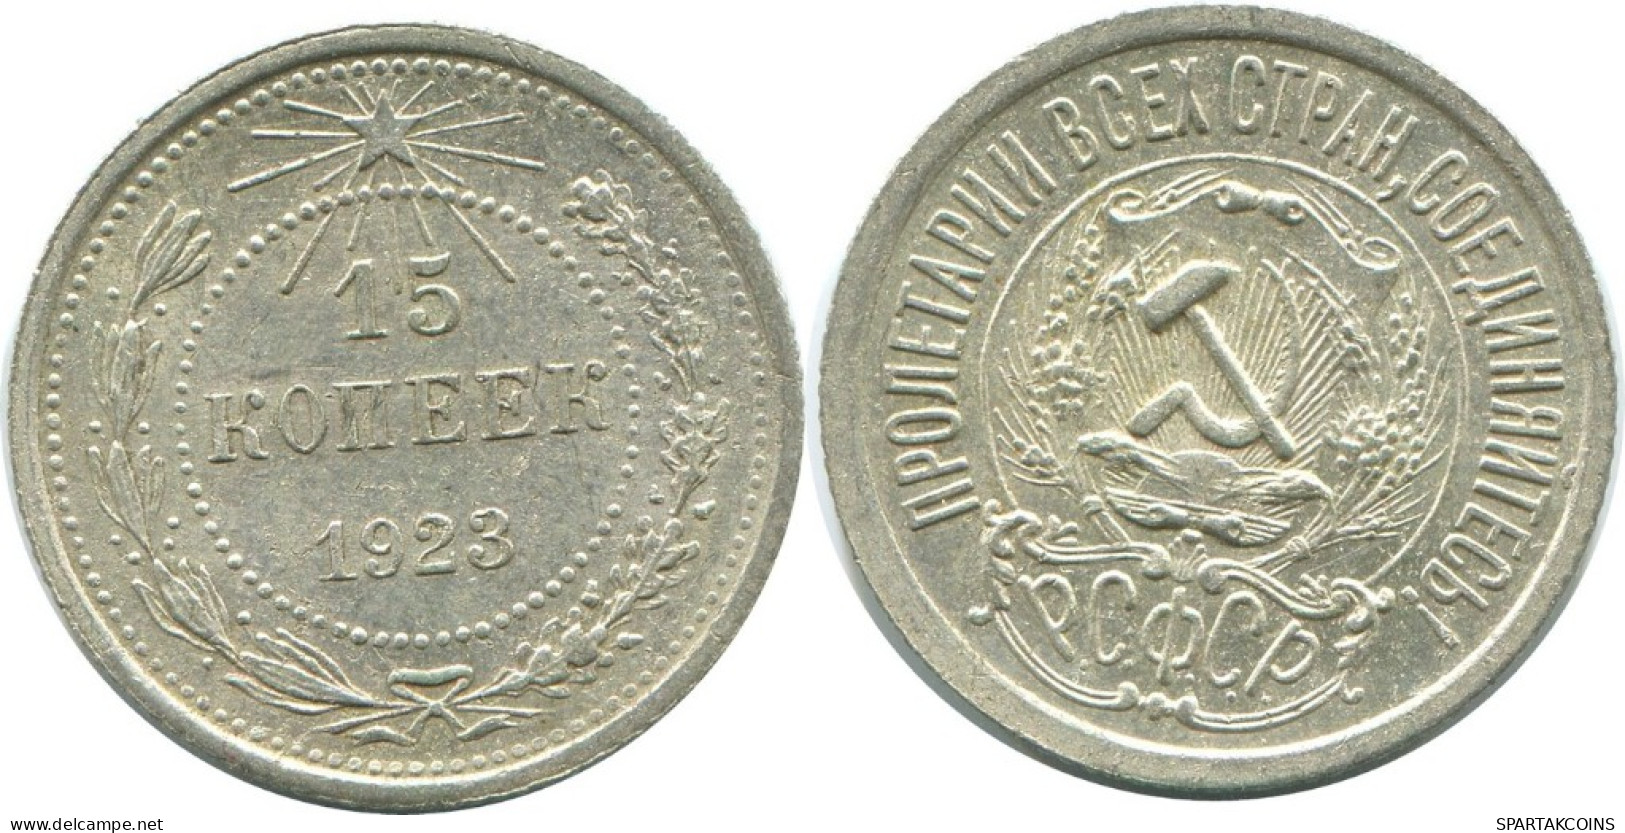 15 KOPEKS 1923 RUSSLAND RUSSIA RSFSR SILBER Münze HIGH GRADE #AF052.4.D.A - Russia